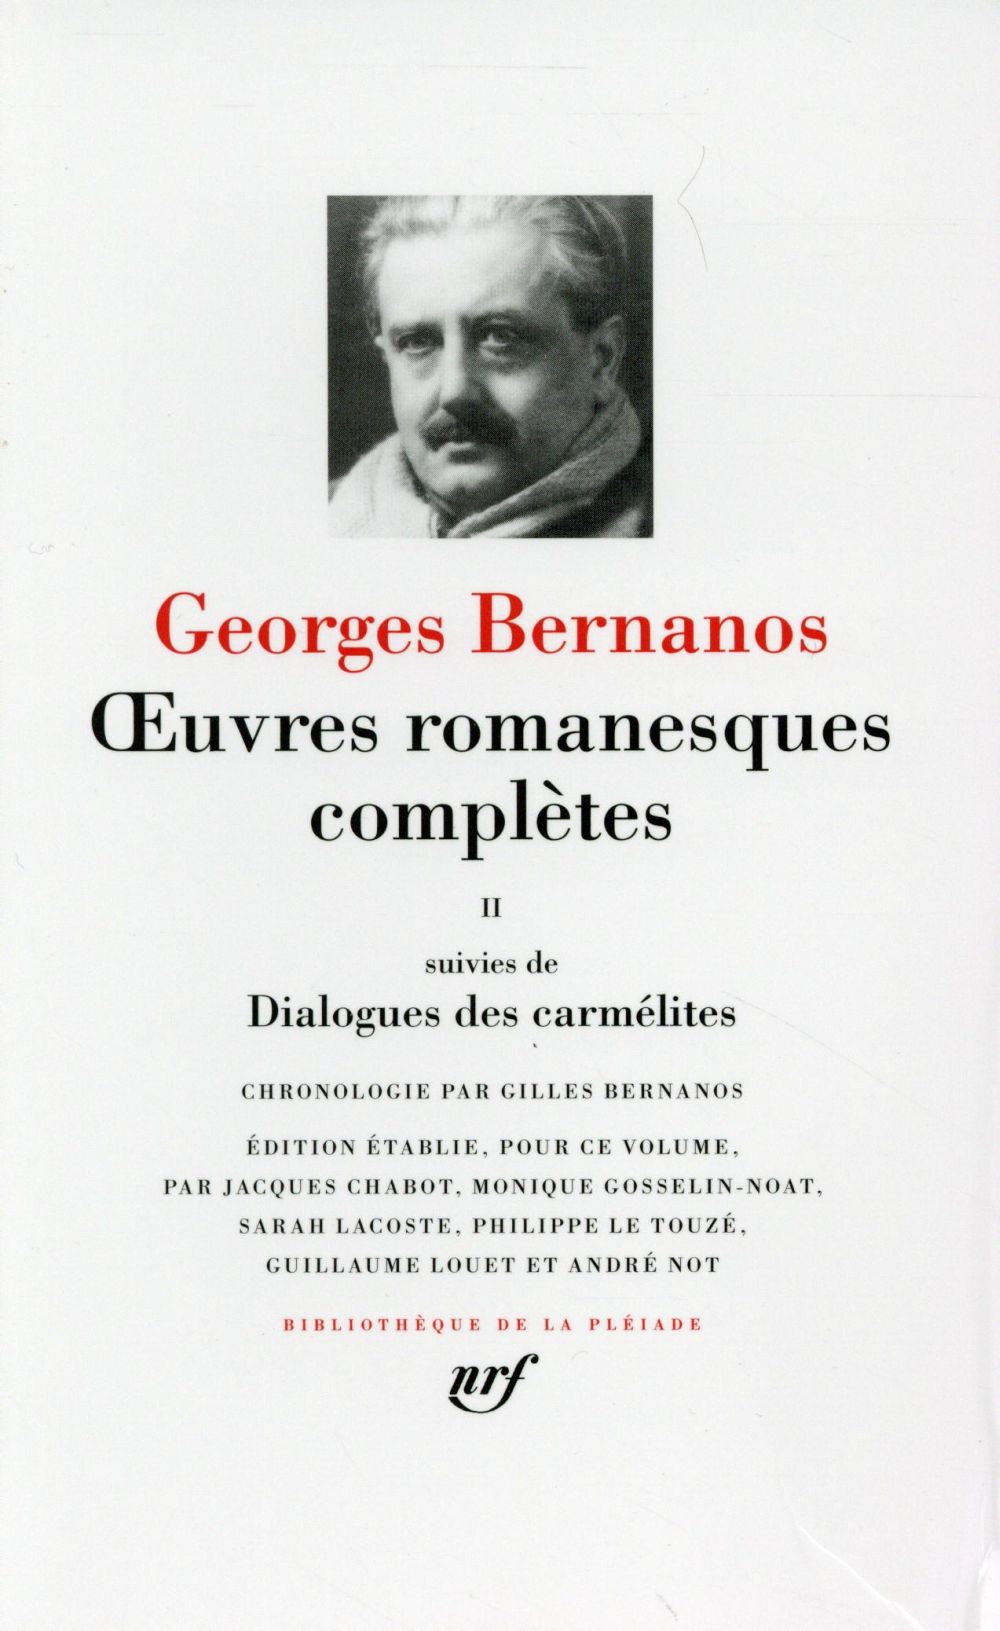 Oeuvres romanesques completes/dialogues des carmelites - vol02